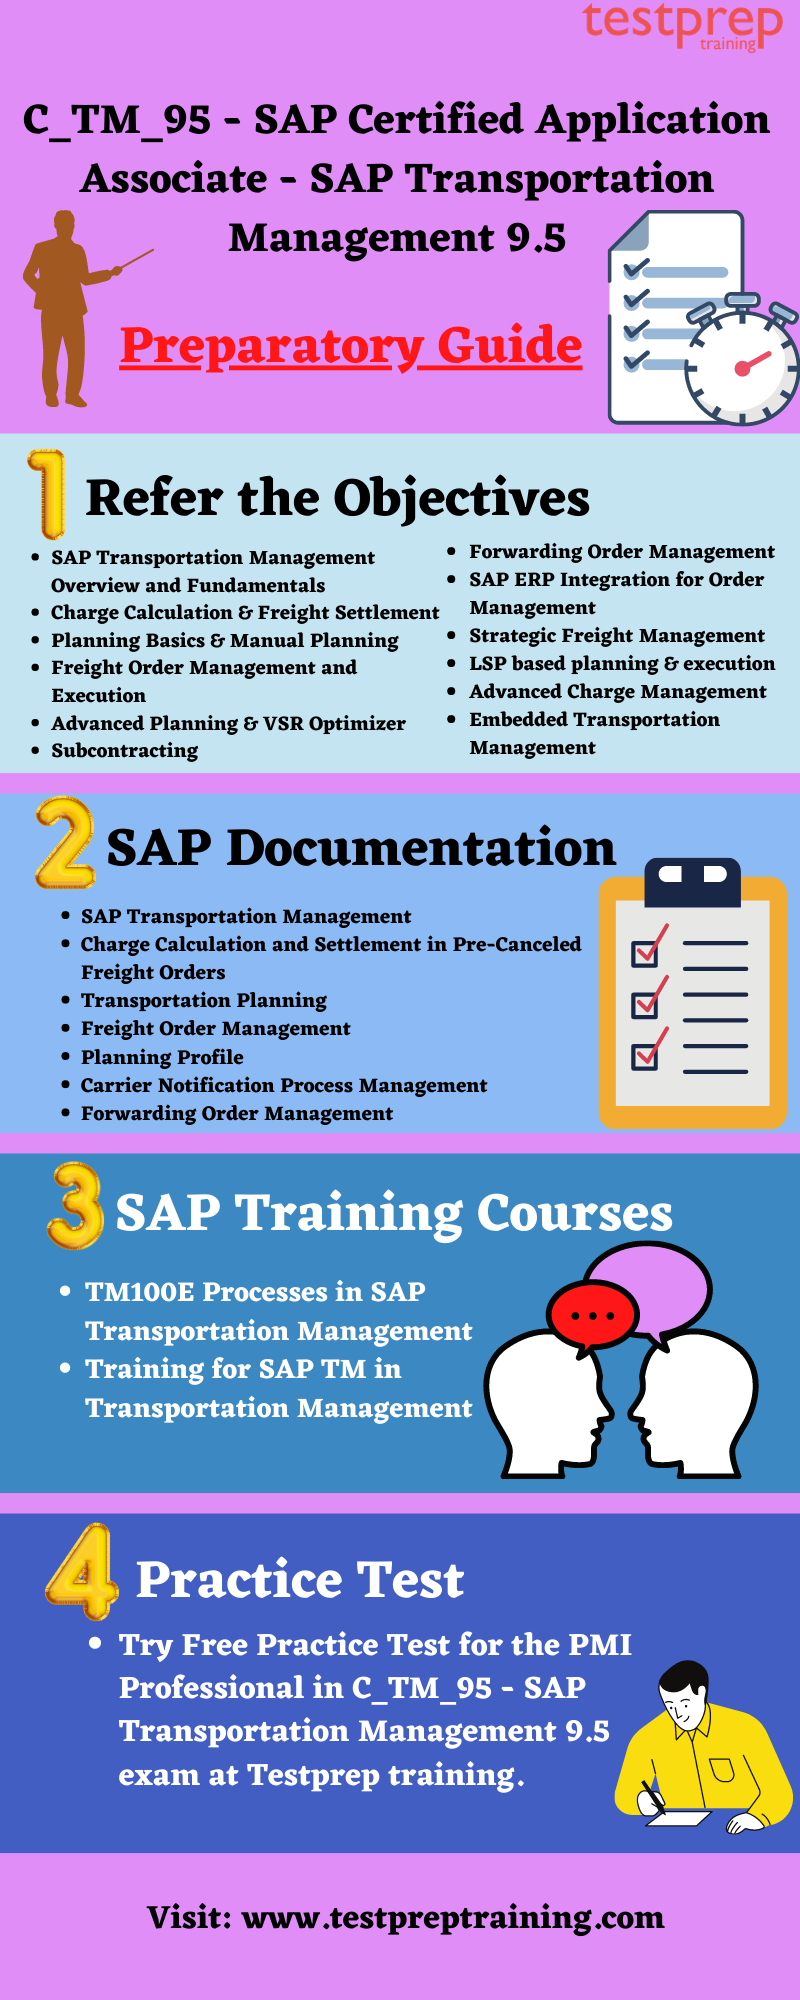 SAP C_TM_95 preparatory guide  